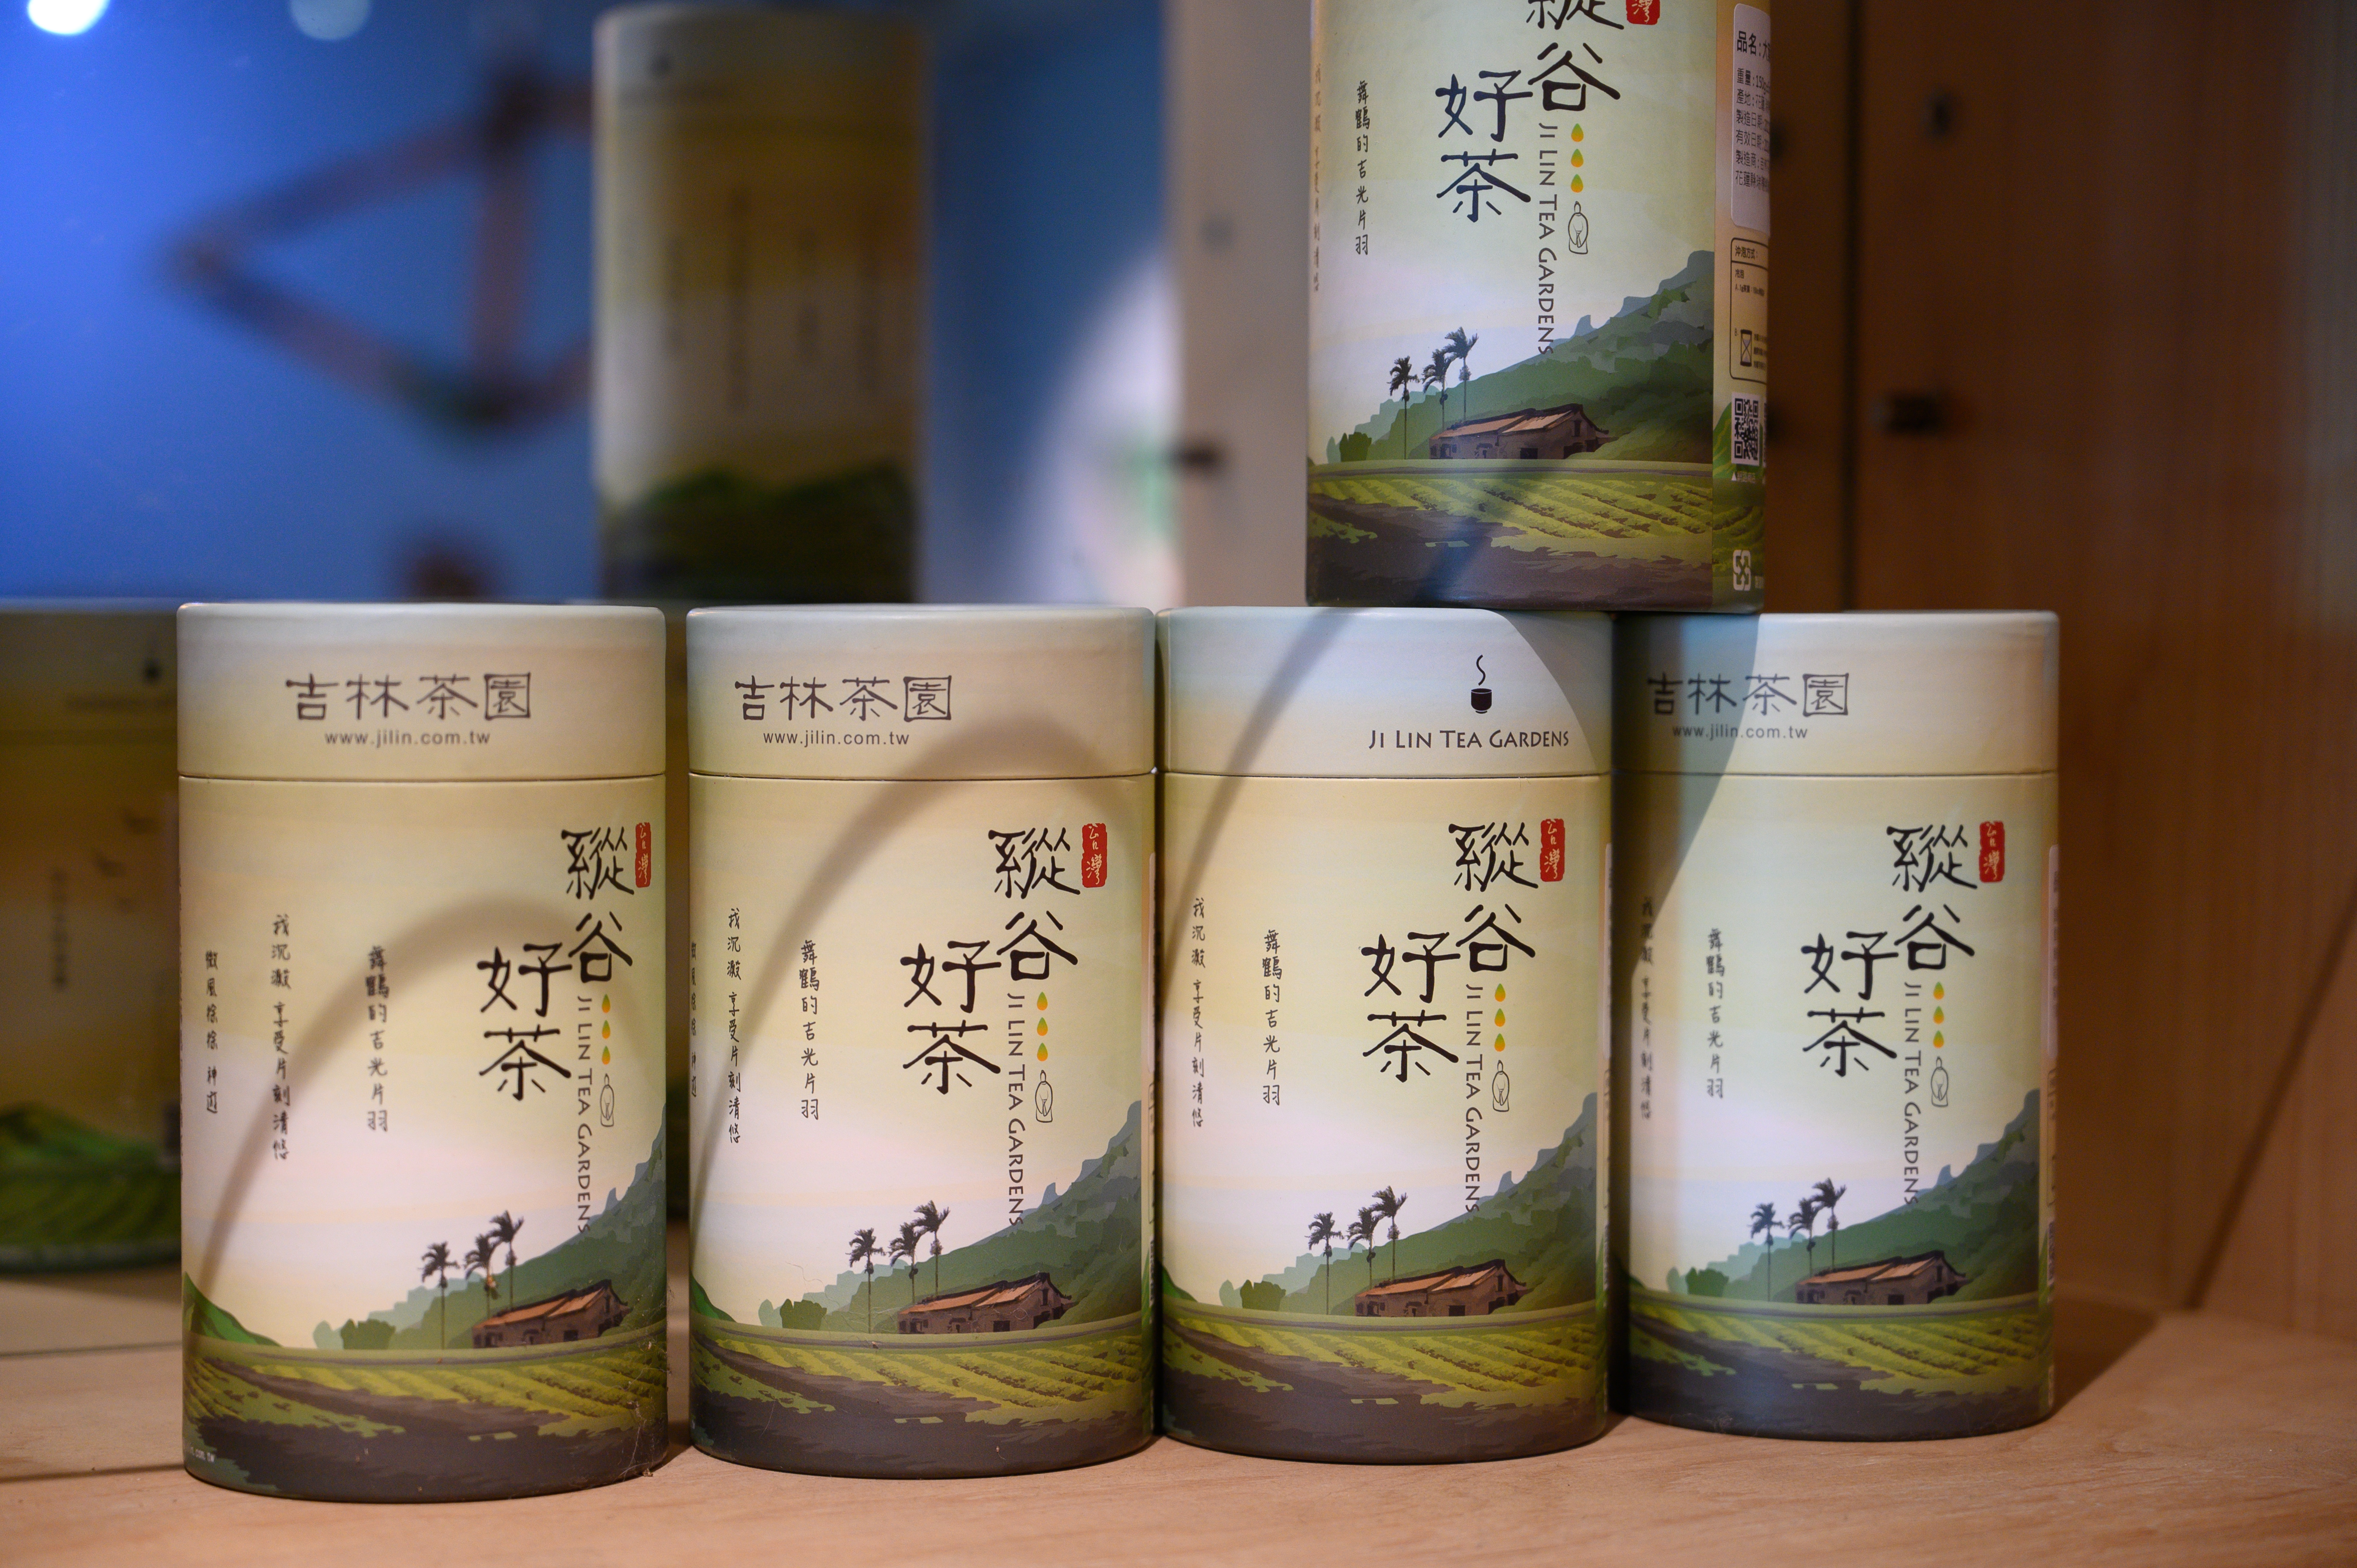 工作室也販售自家生產的各種茶葉。